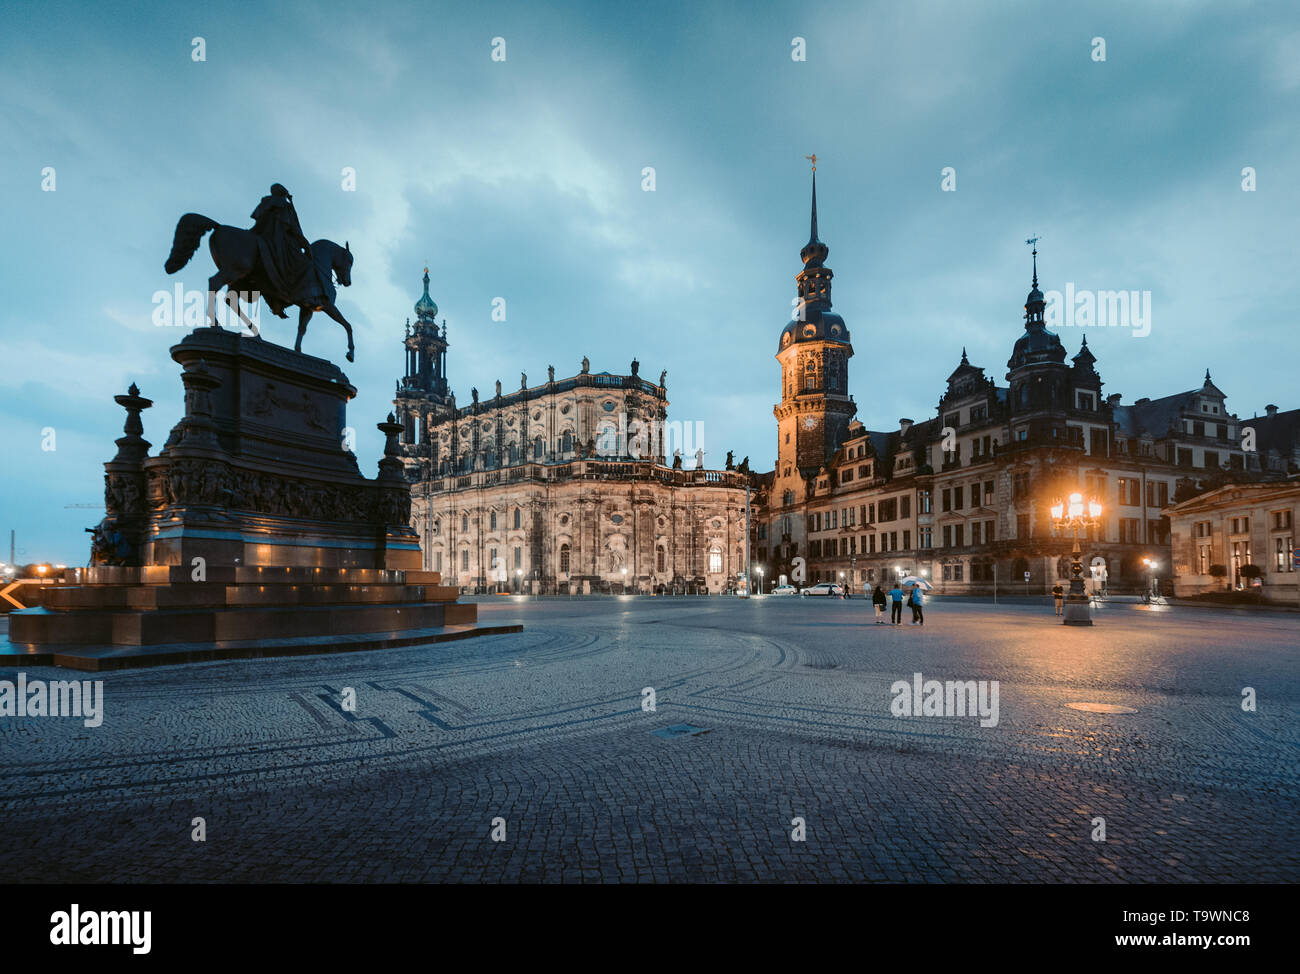 Classic Crepúsculo ver histórico de Dresden, centro de la ciudad iluminada de noche hermosa penumbra con espectacular cielo azul durante horas al atardecer, Sajonia, Ge Foto de stock